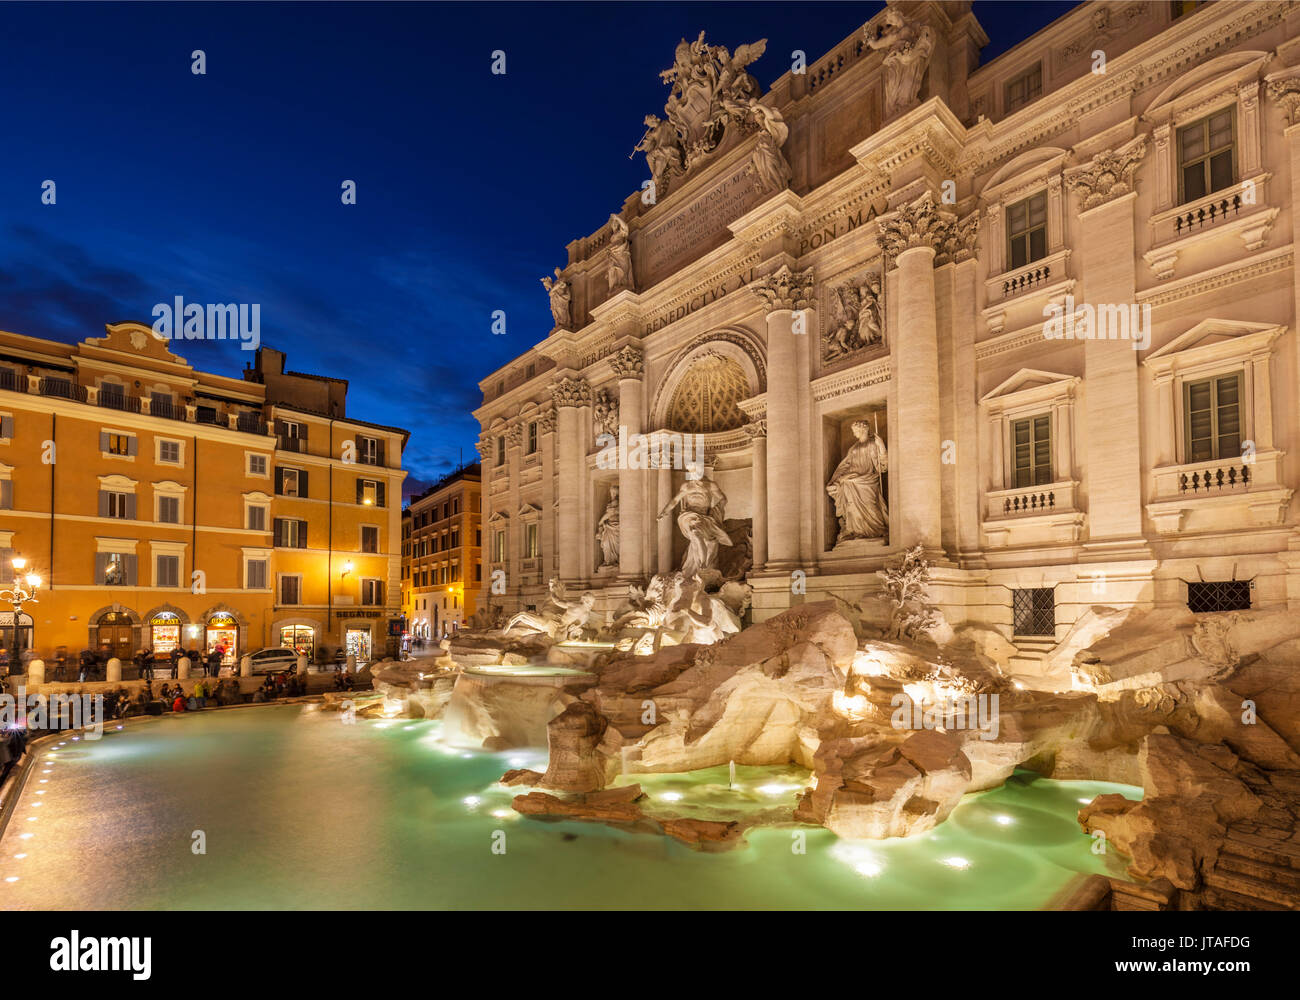 La Fontana de Trevi, respaldada por el Palazzo Poli durante la noche, Roma, Lazio, Italia, Europa Foto de stock